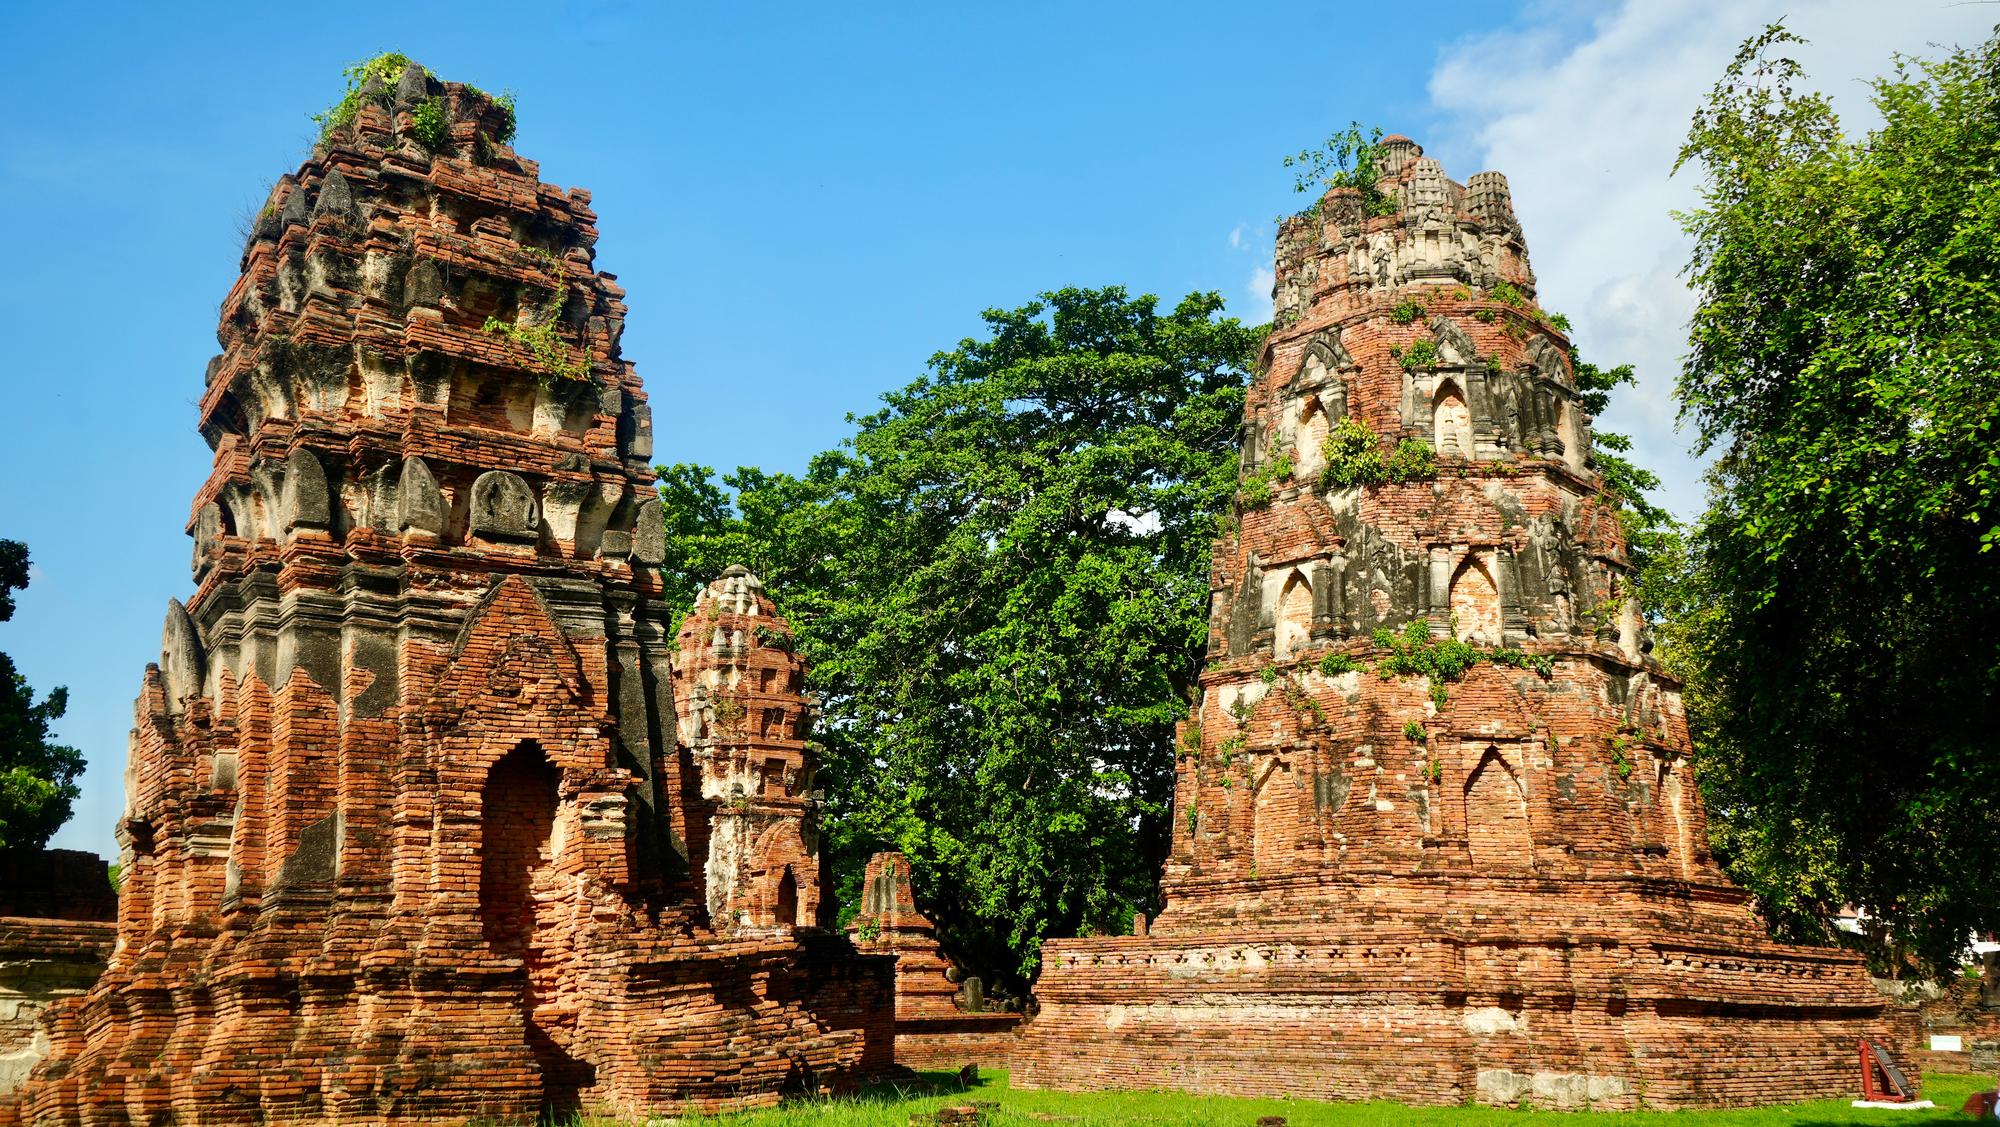 The oldest Stupas